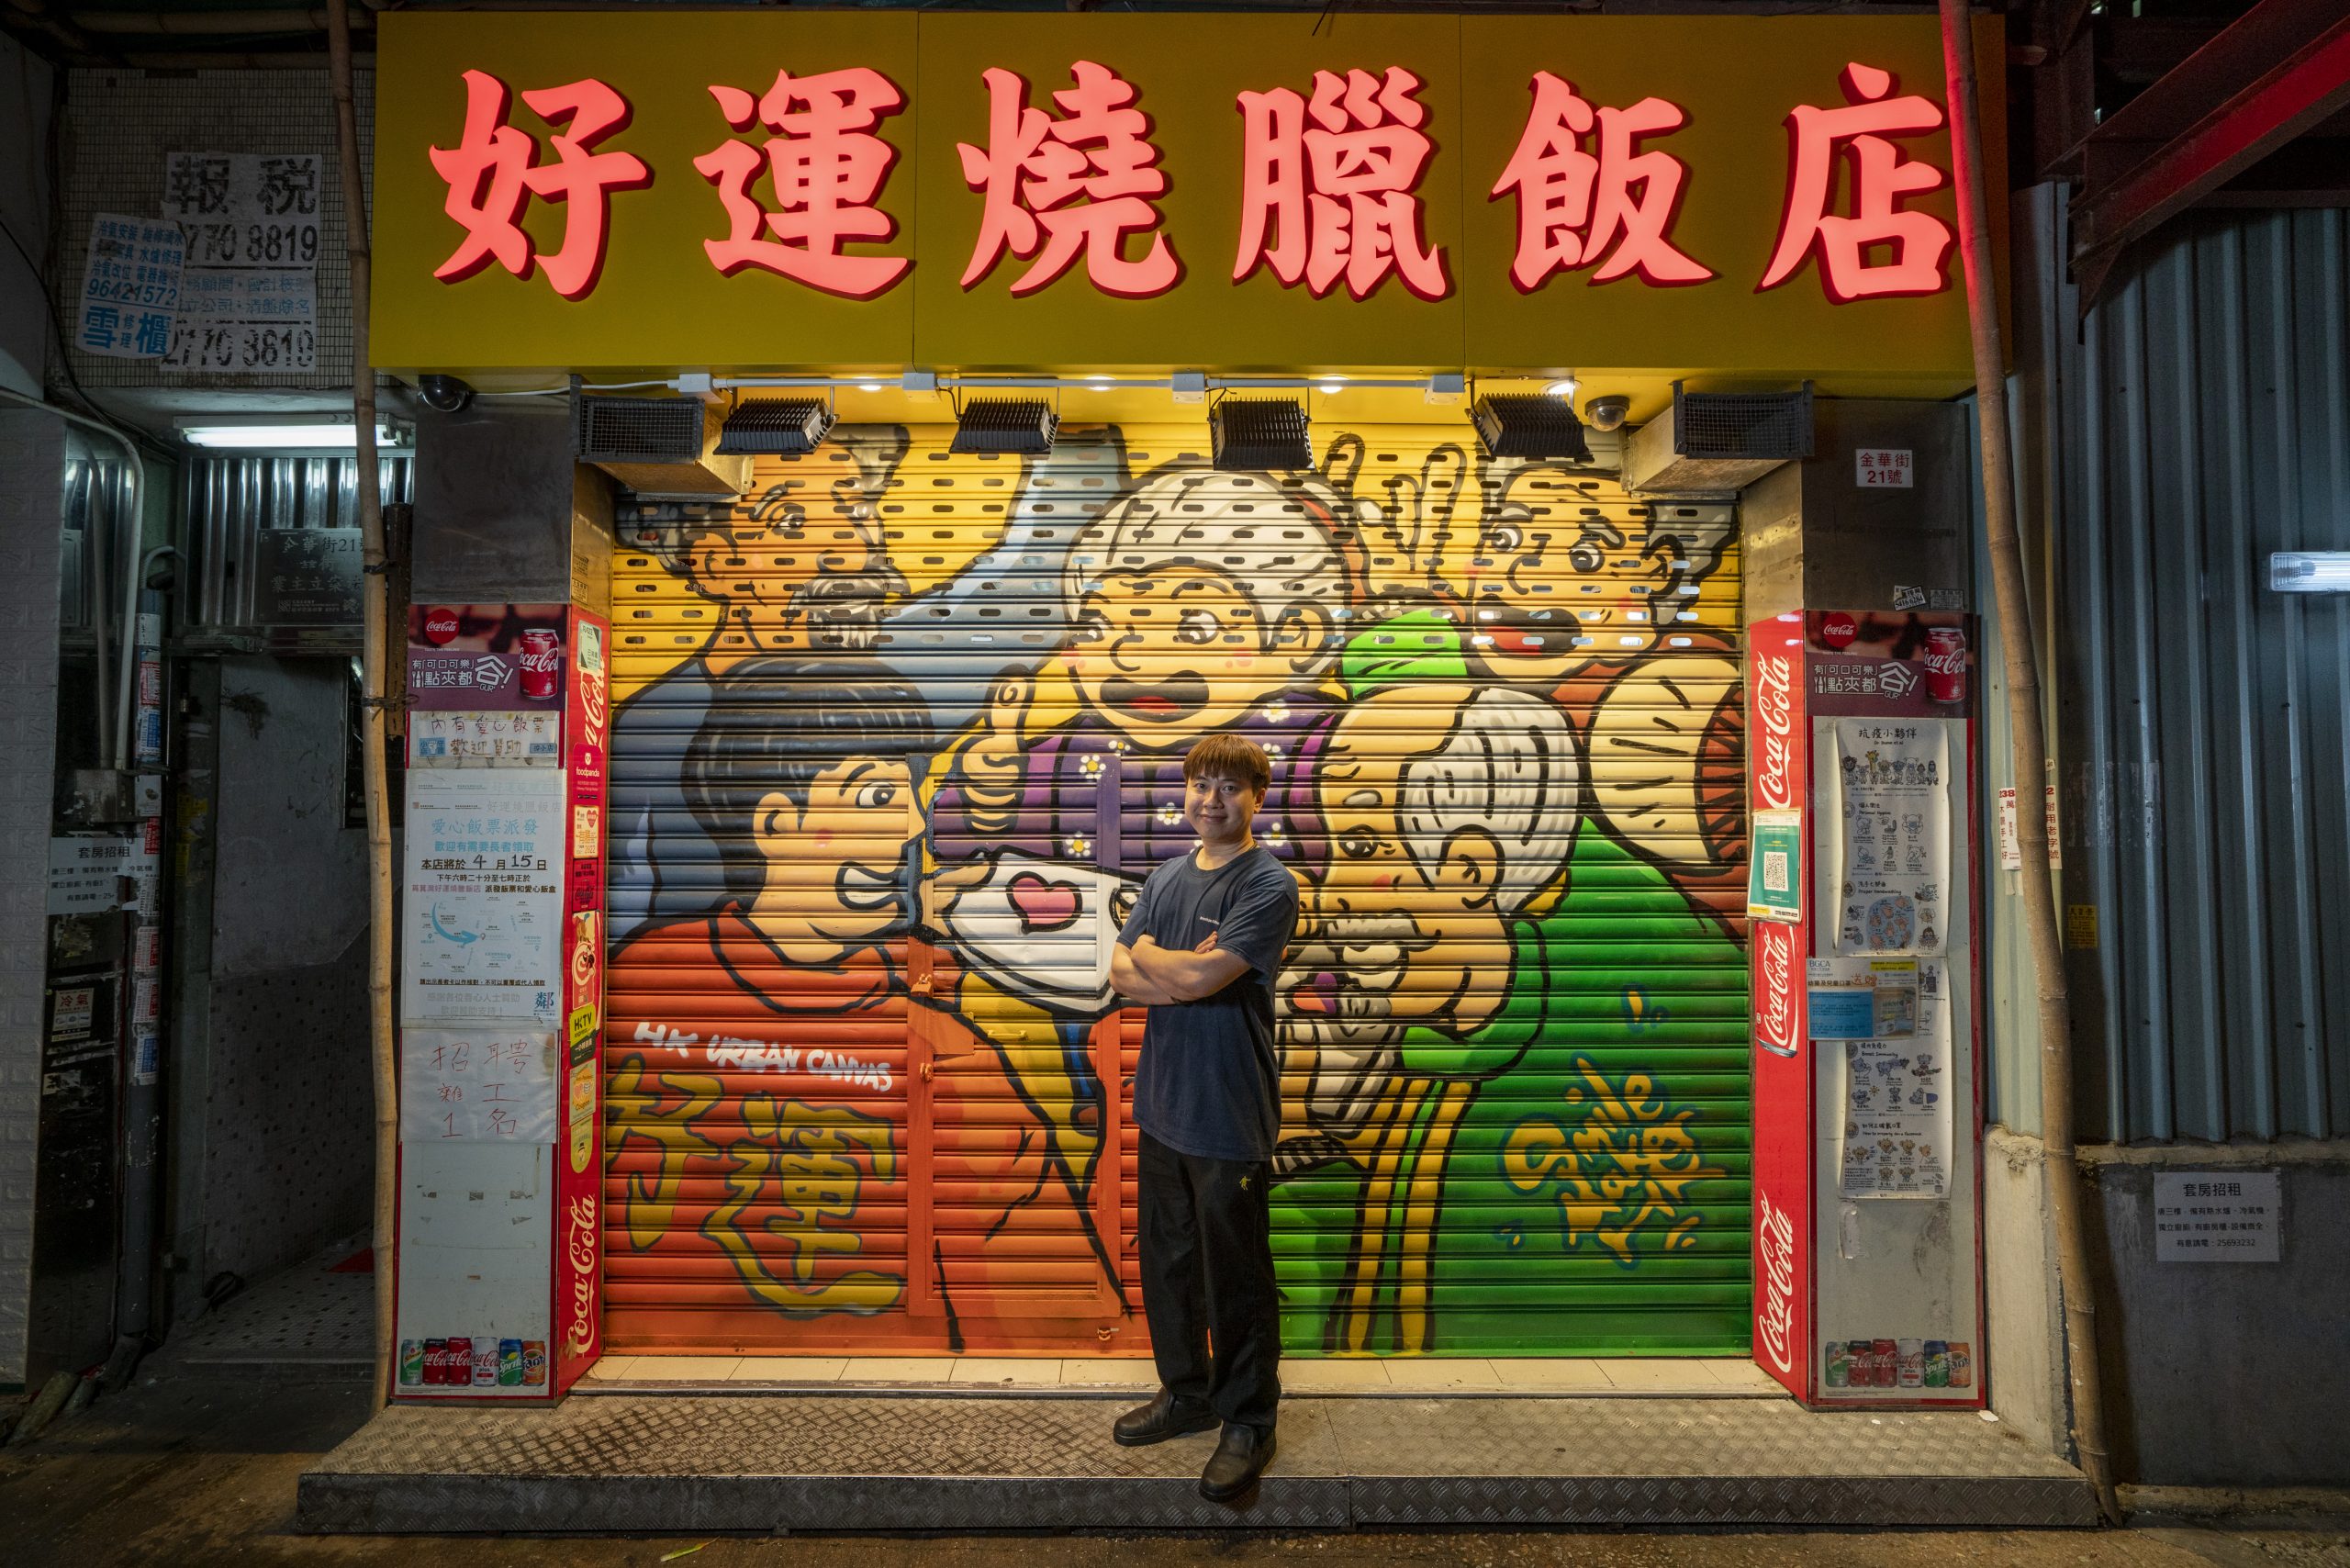 Hong Kong Urban Canvas project